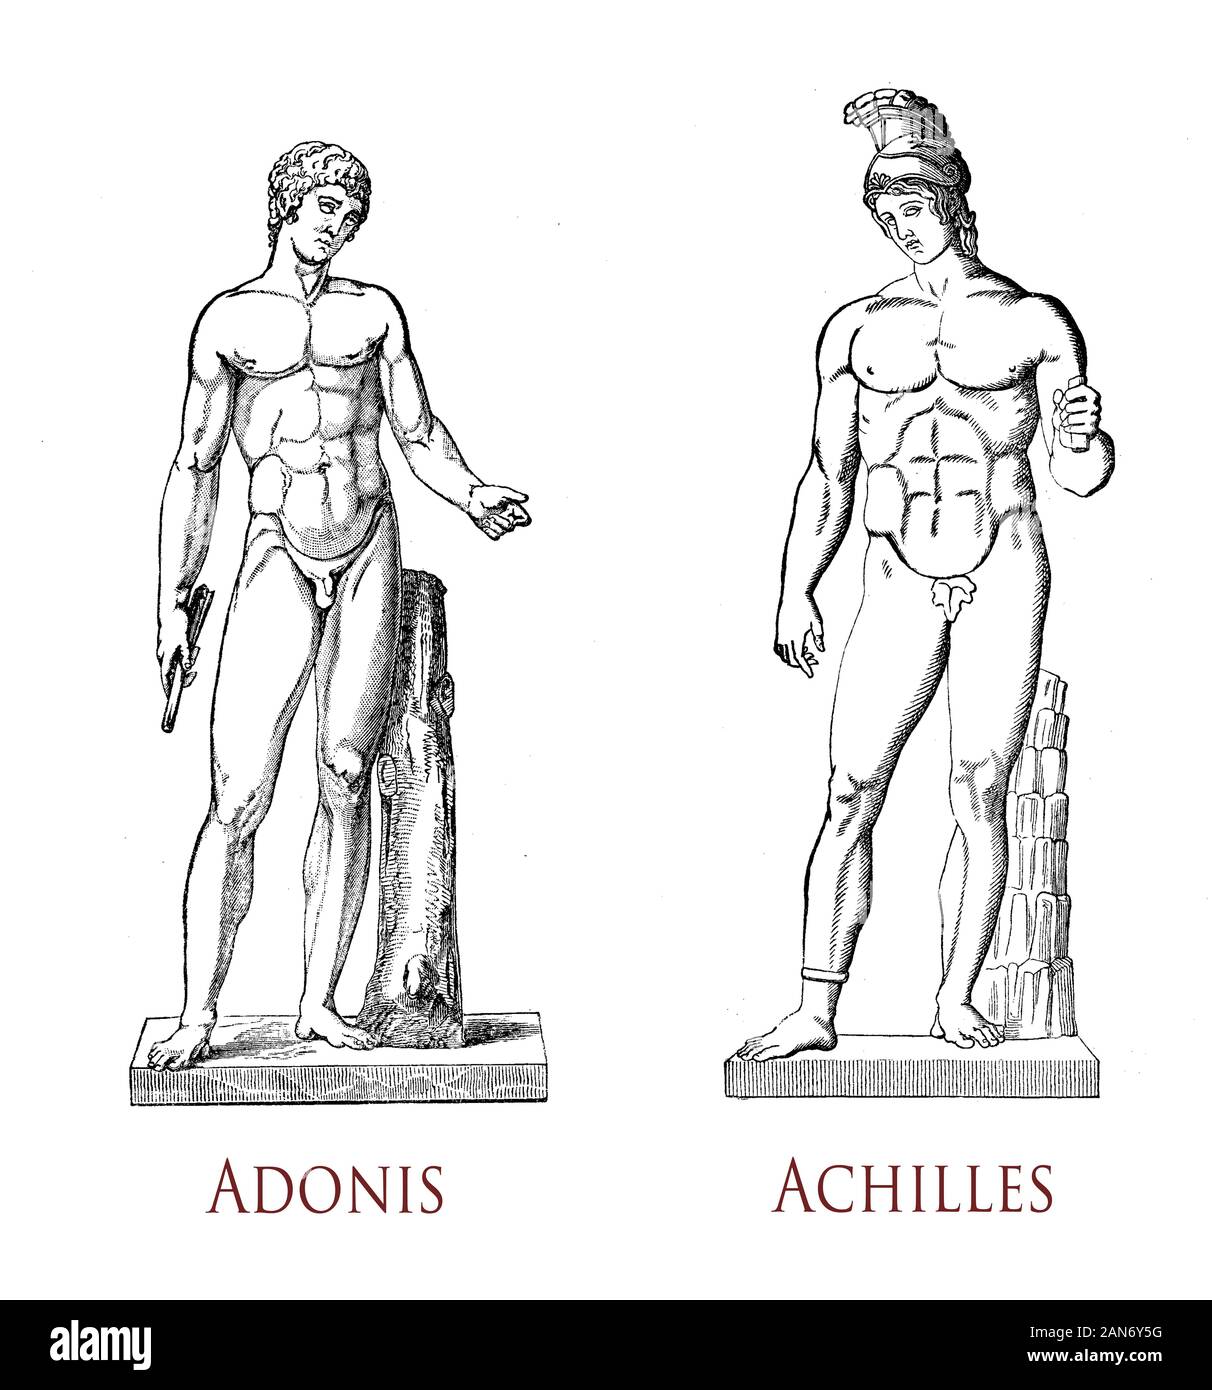 Beauté masculine grecque : musculature et grâce de la forme masculine comme dans le classique des statues d'Adonis amant mortel de la déesse Aphrodite et Achille héros de la guerre de Troie Banque D'Images